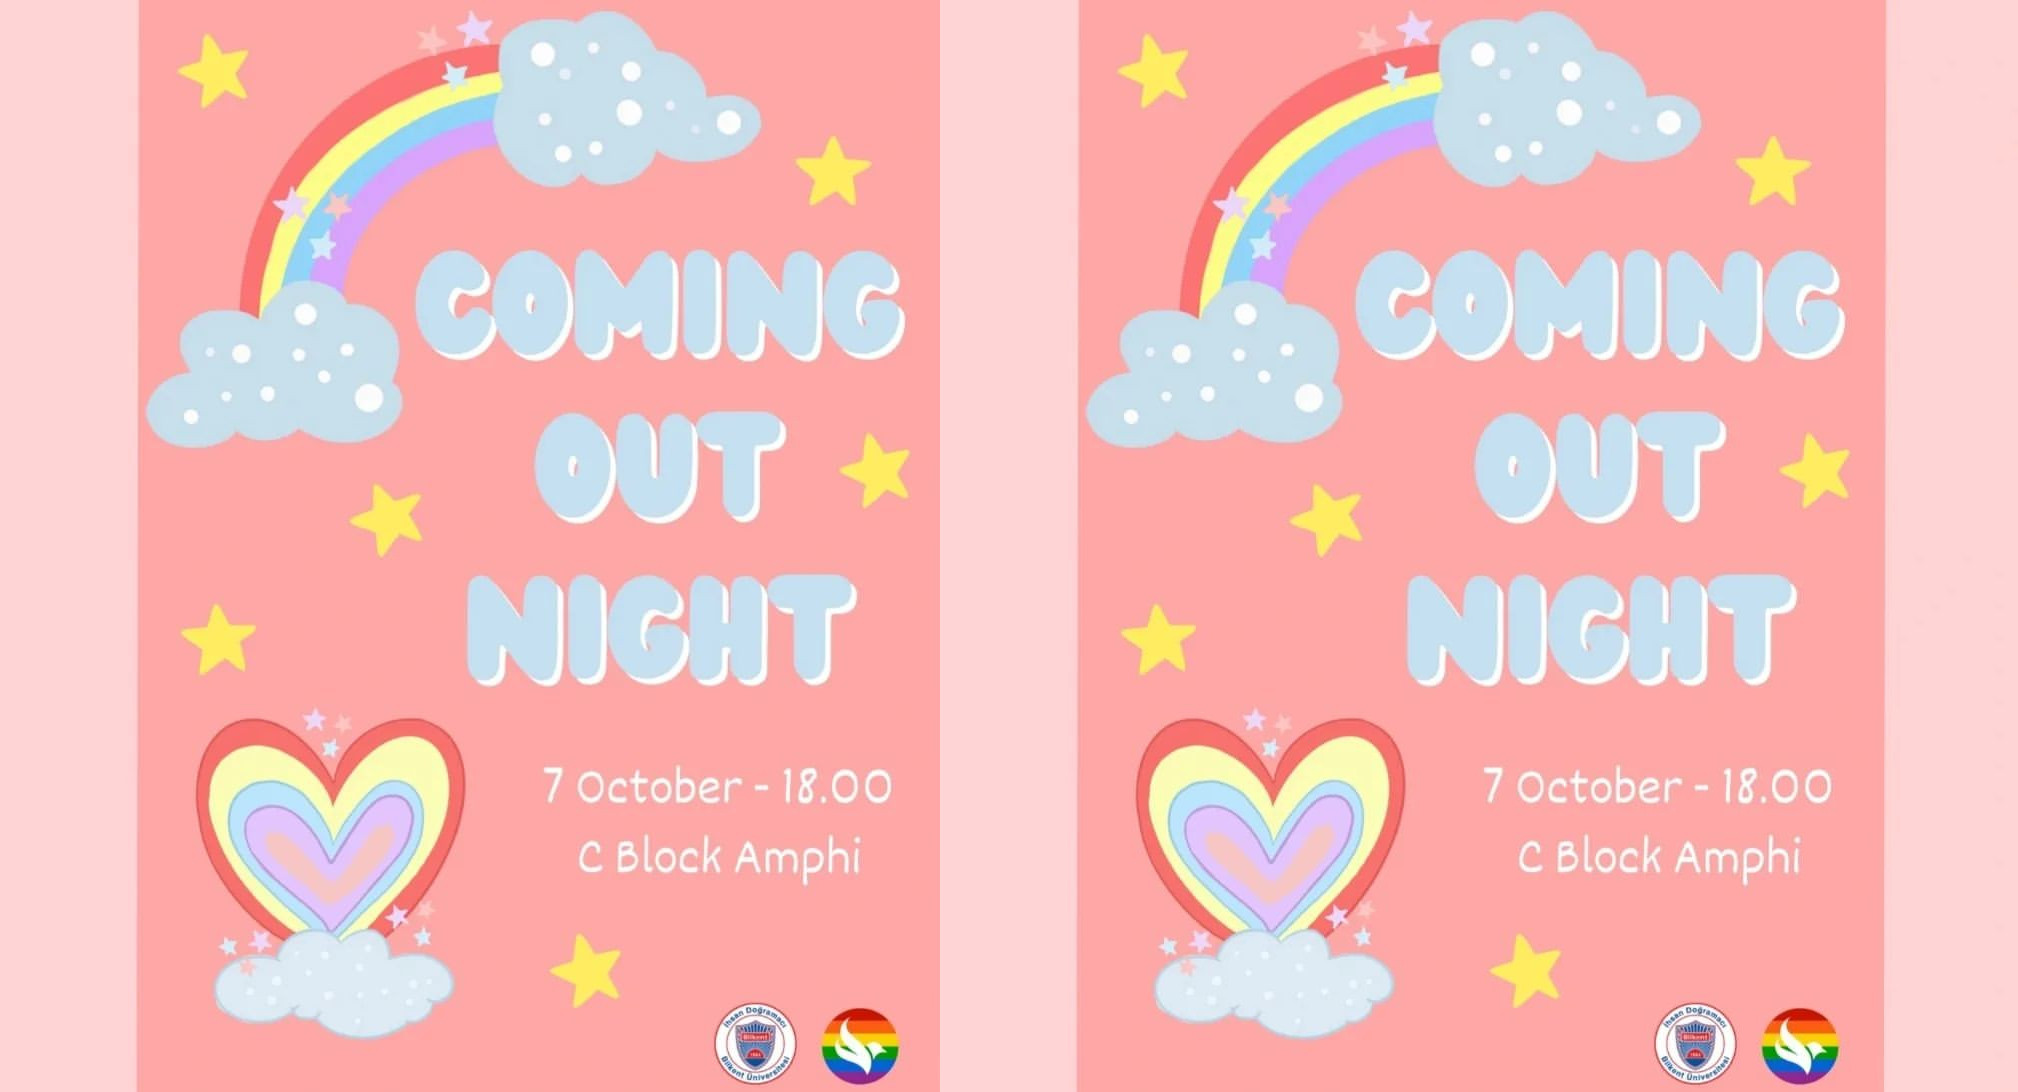 Renkli Düşün “Coming Out Night” etkinliğine çağırıyor | Kaos GL - LGBTİ+ Haber Portalı Haber